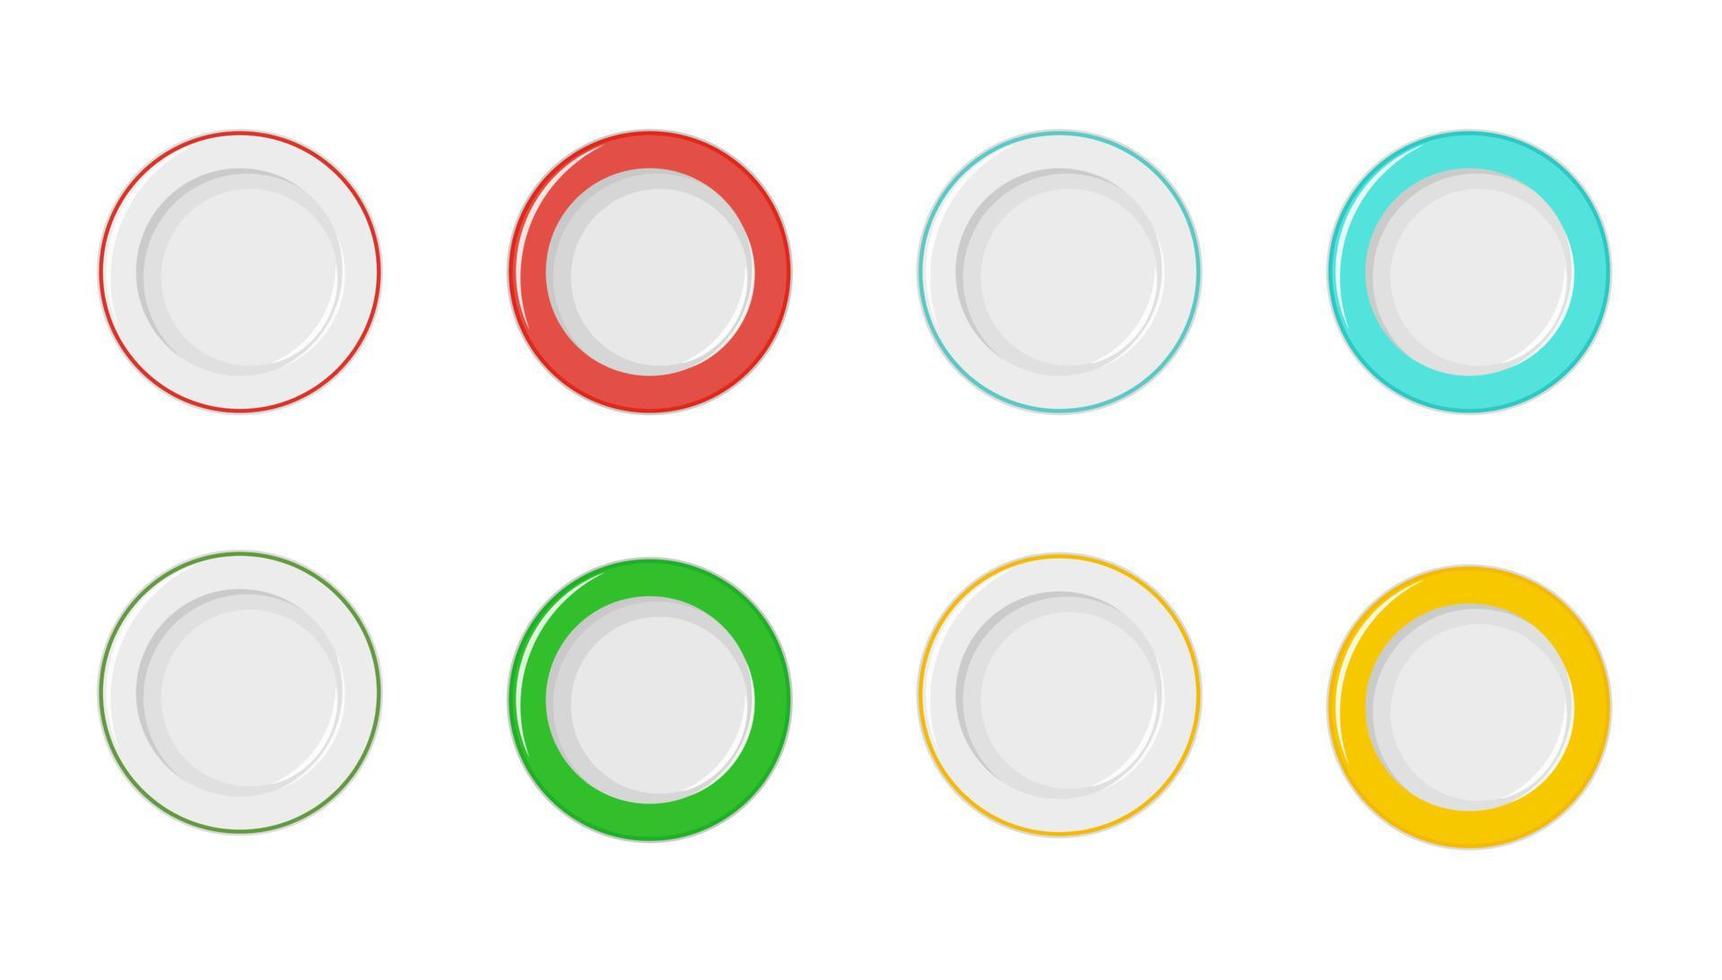 lege borden met rode, blauwe, gele en groene rand op een witte achtergrond. vector